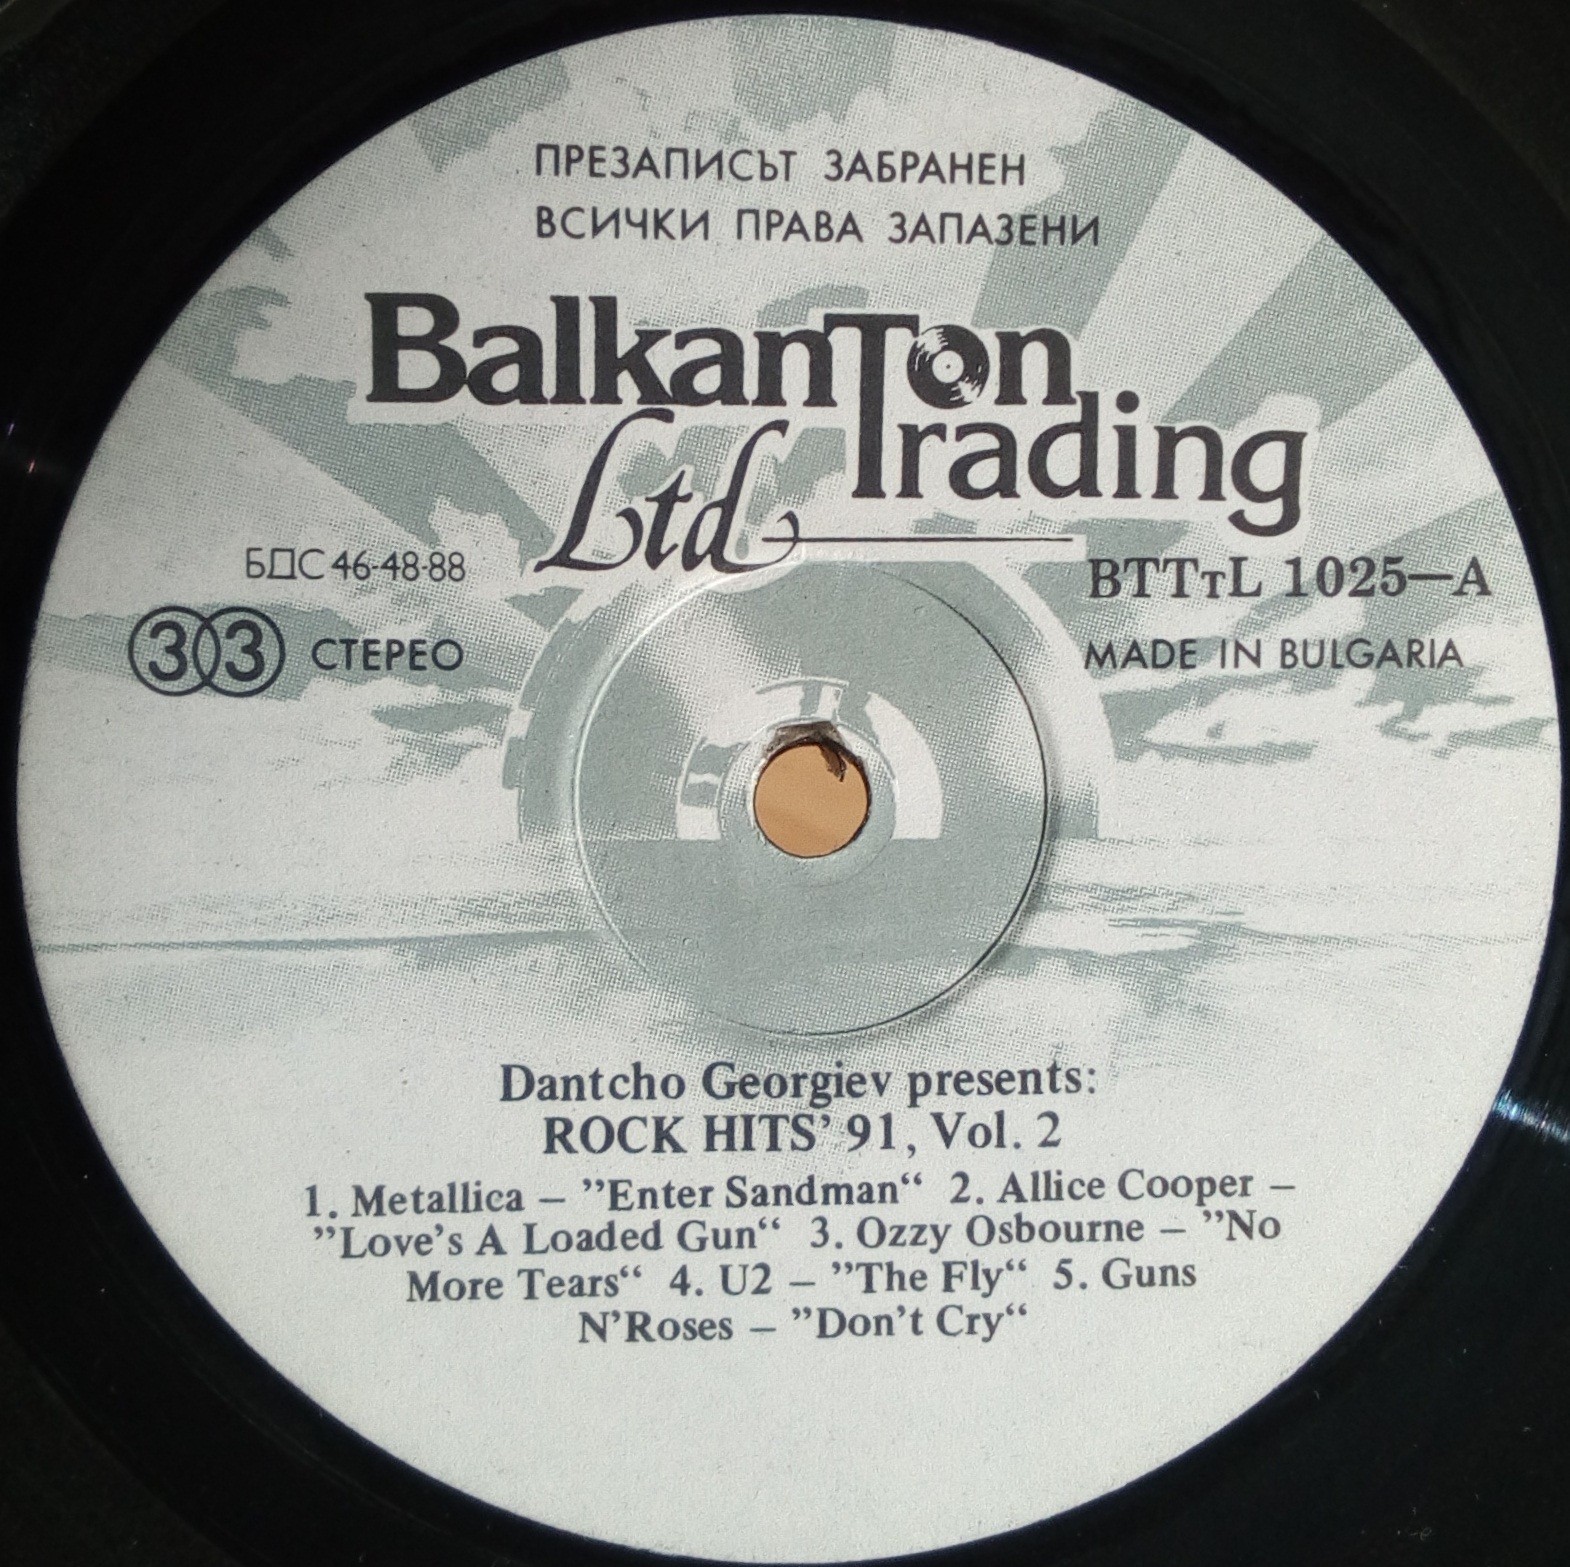 Rock hits '91. Vol. 2 presents Dantcho "Rap" Georgiev